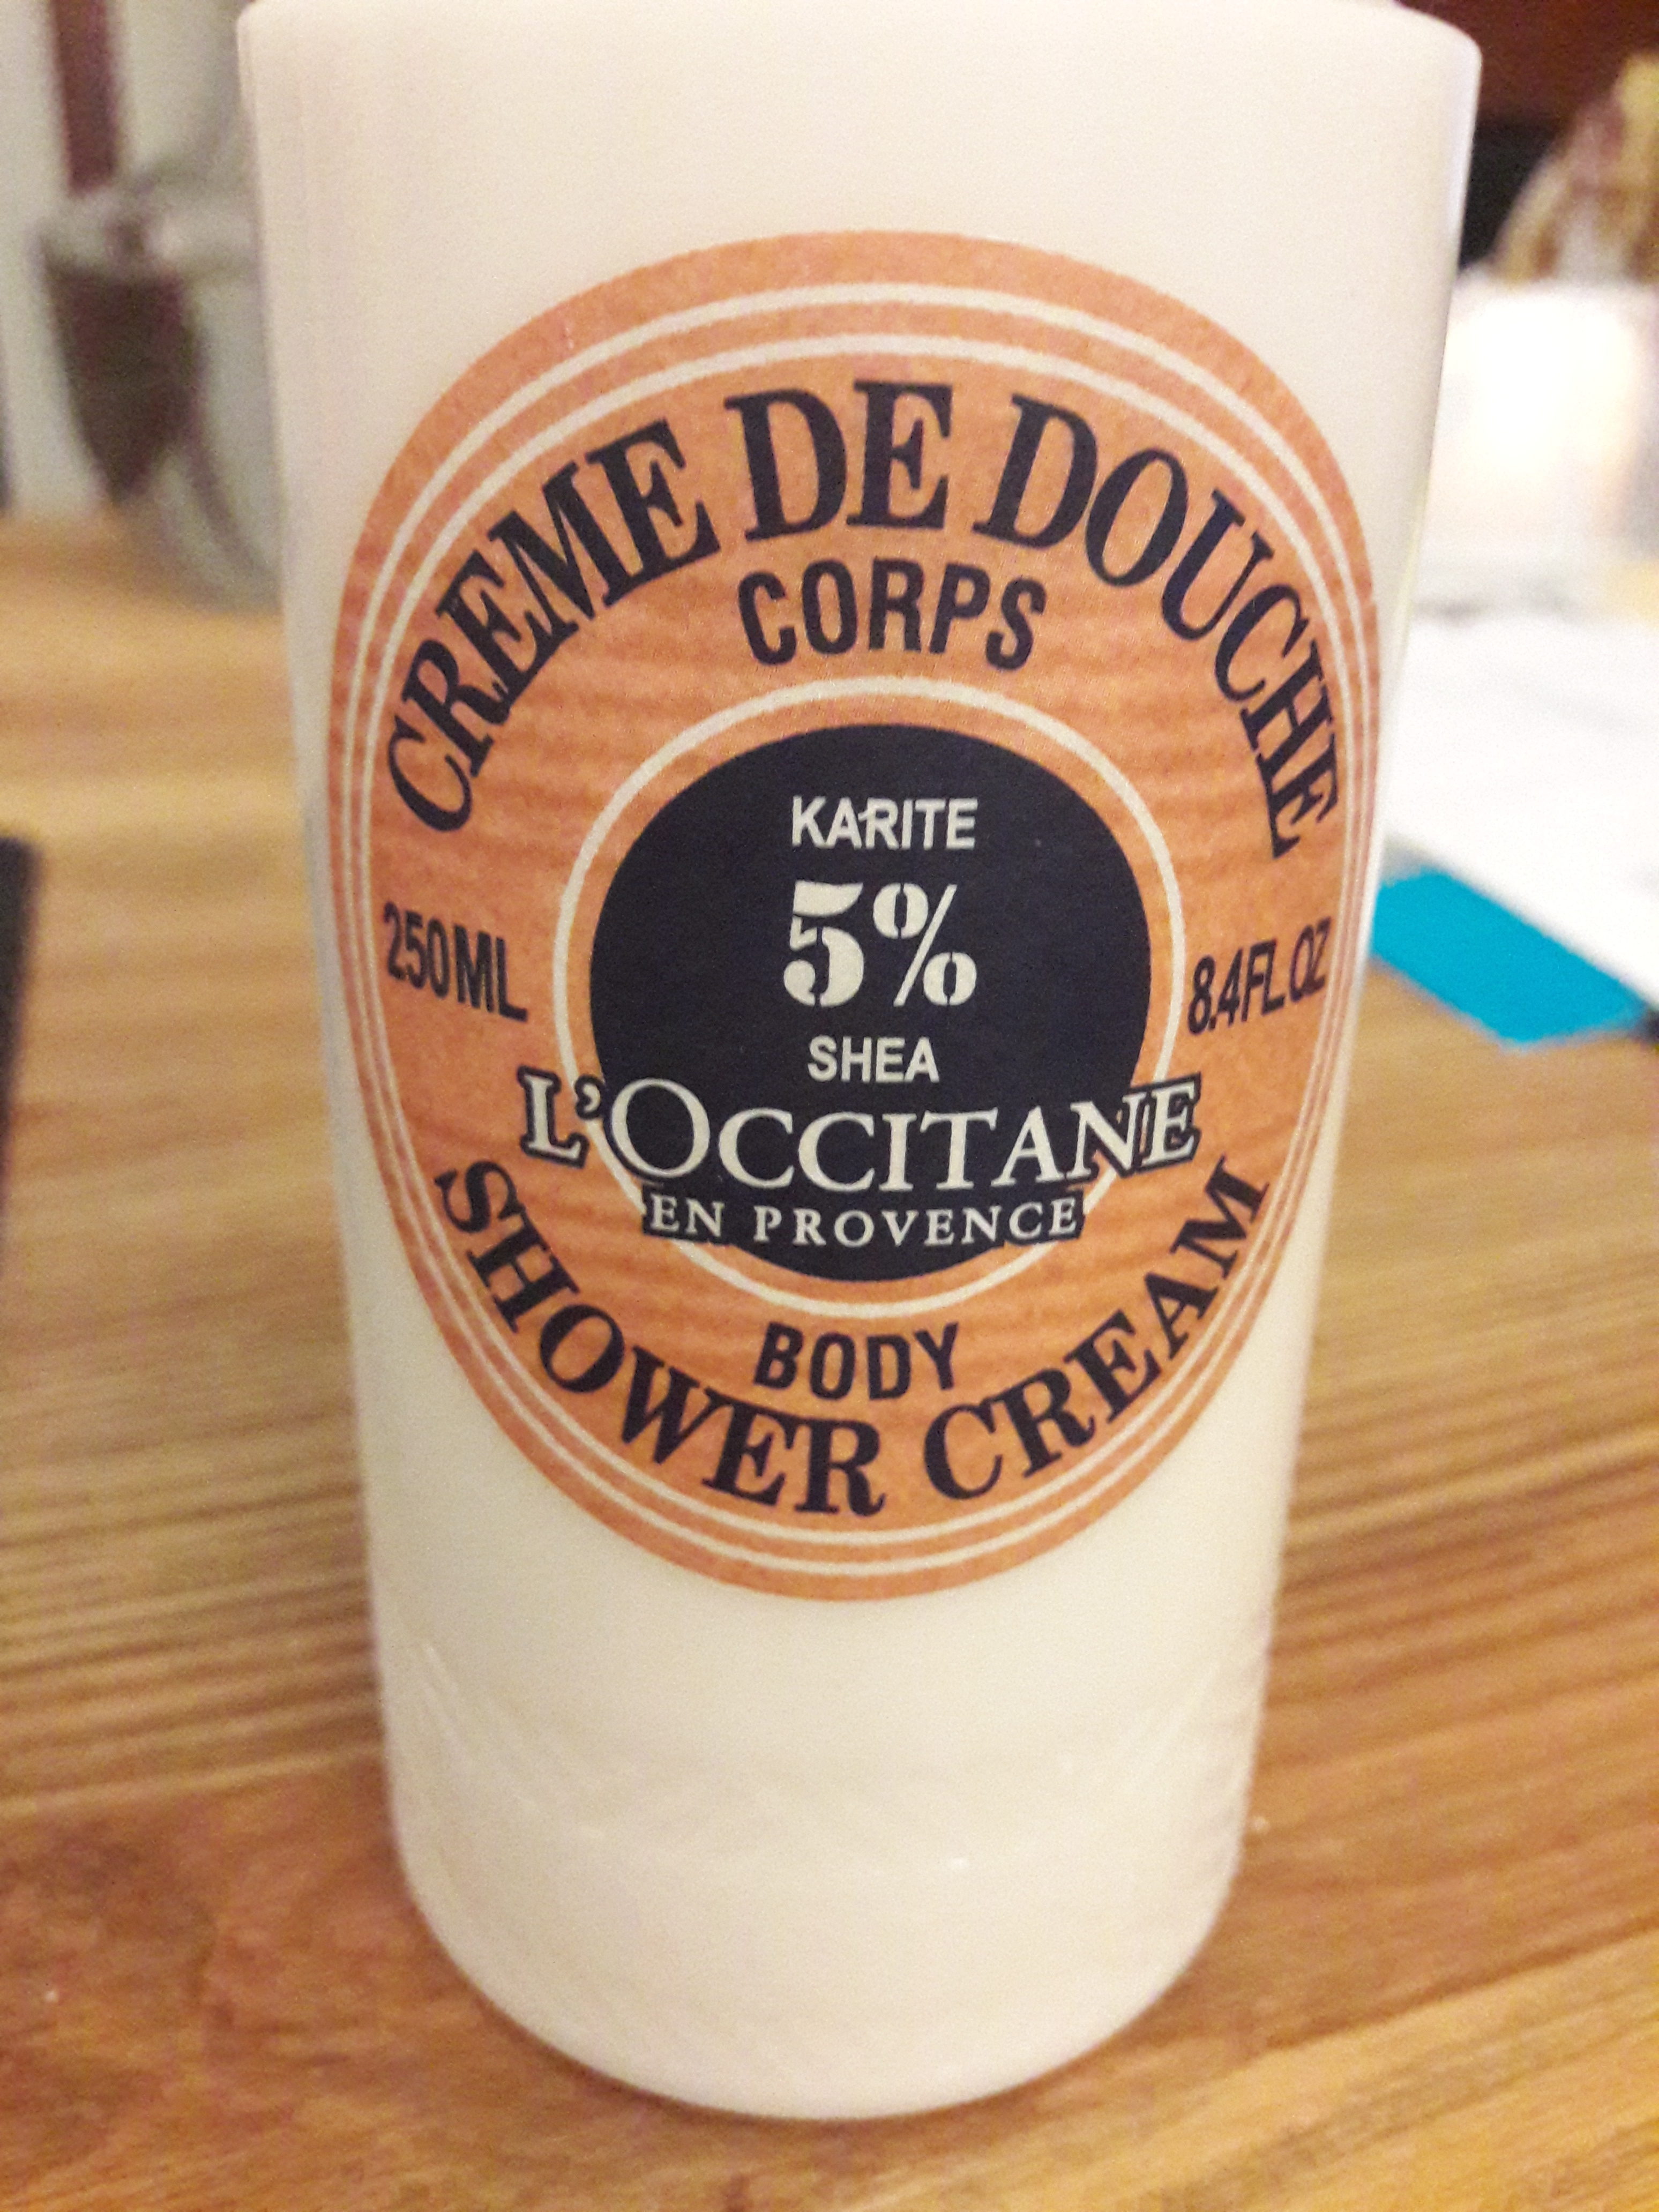 Body shower cream - Produit - fr